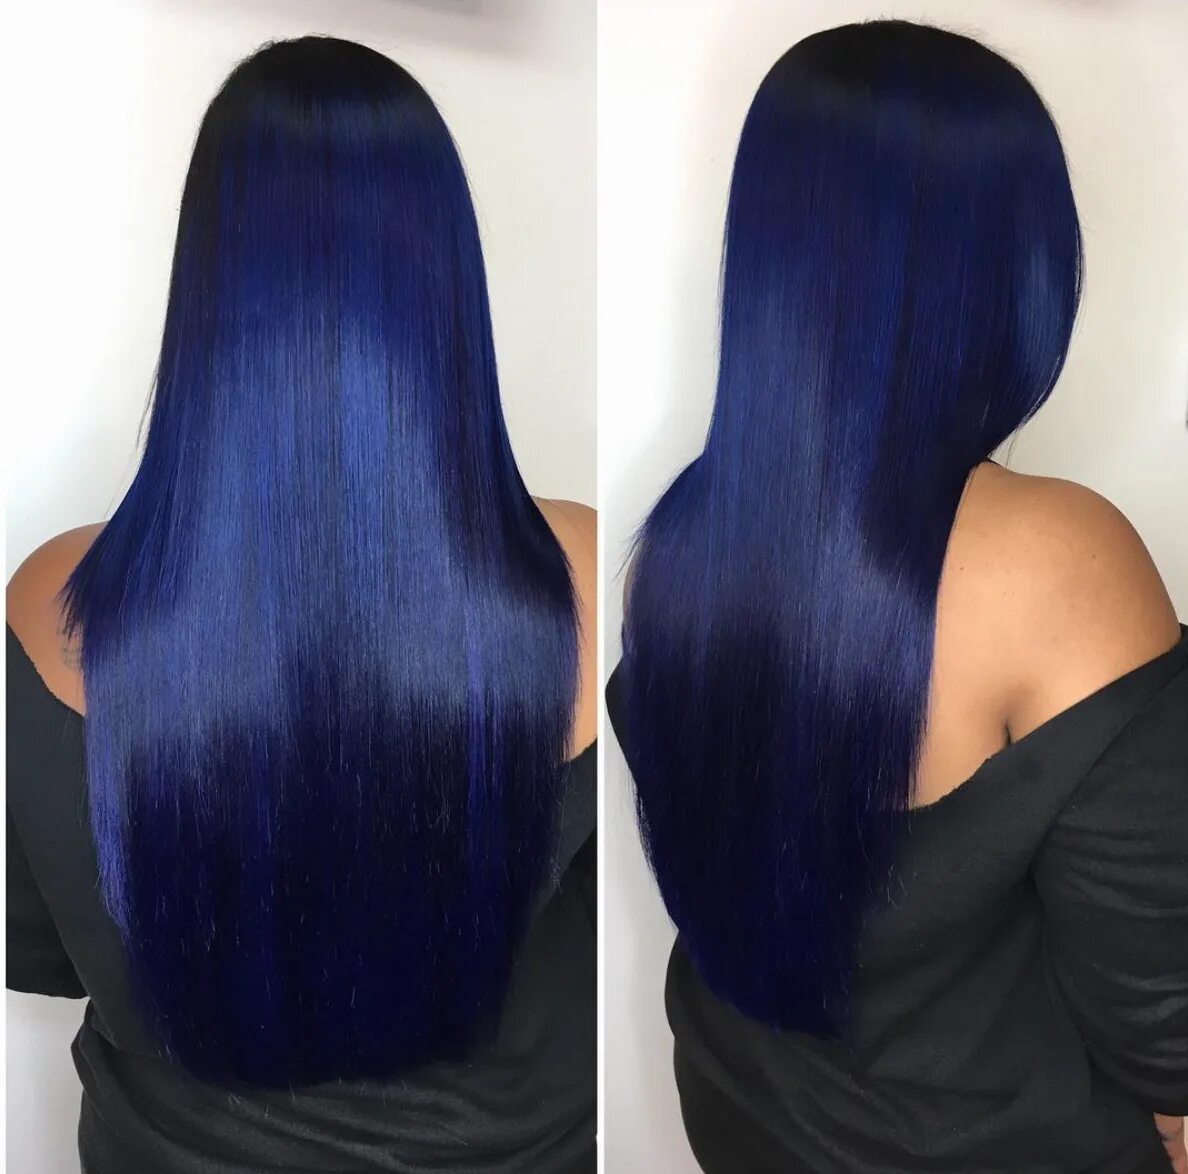 Сини черный цвет волос. Черно синие волосы. Темно синее окрашивание волос. Покраска волос черный с синим. Сине черная краска для волос